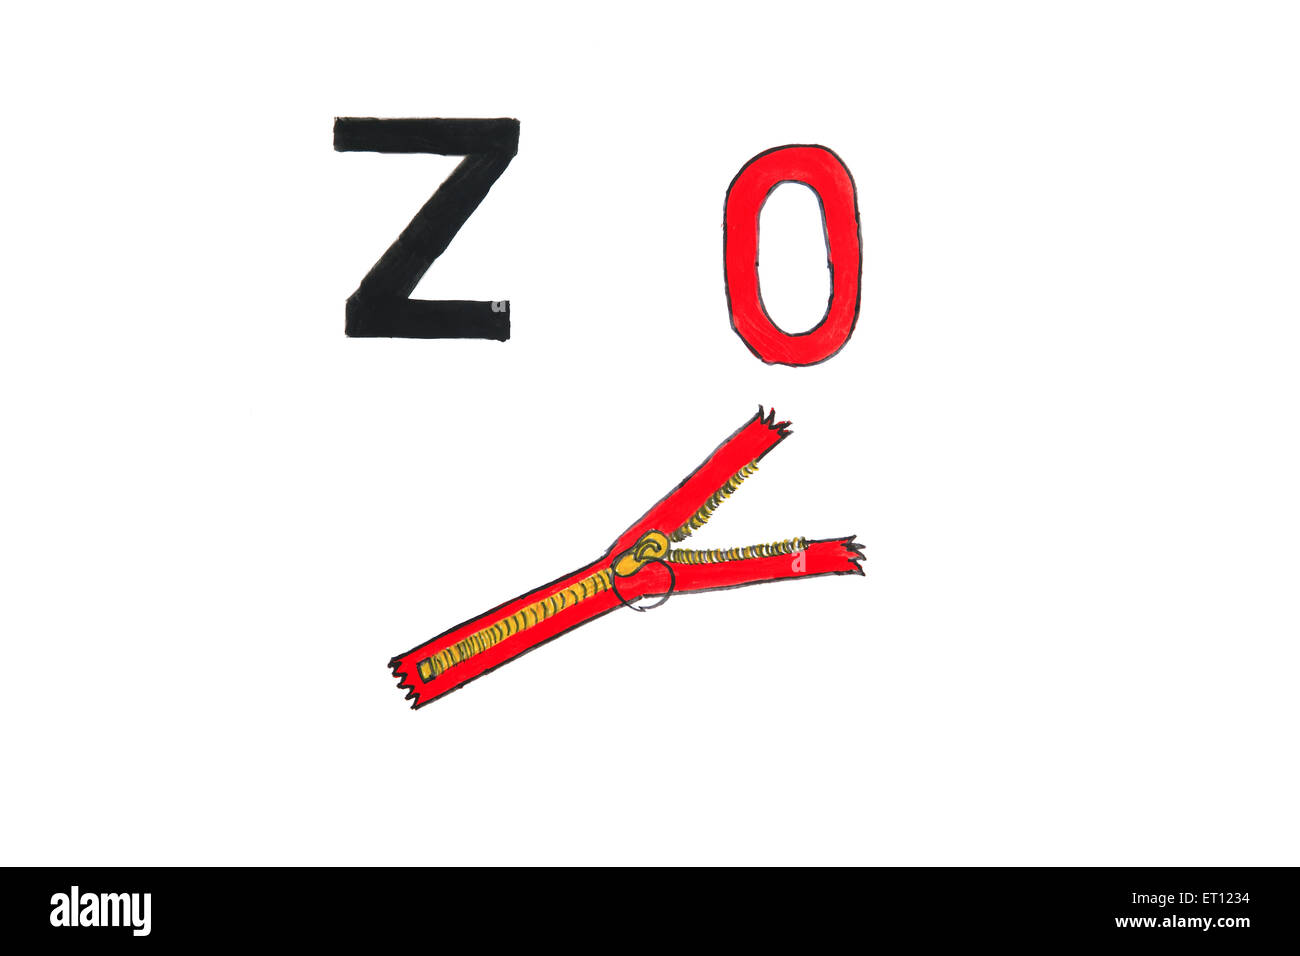 z for zero, z for zip Stock Photo